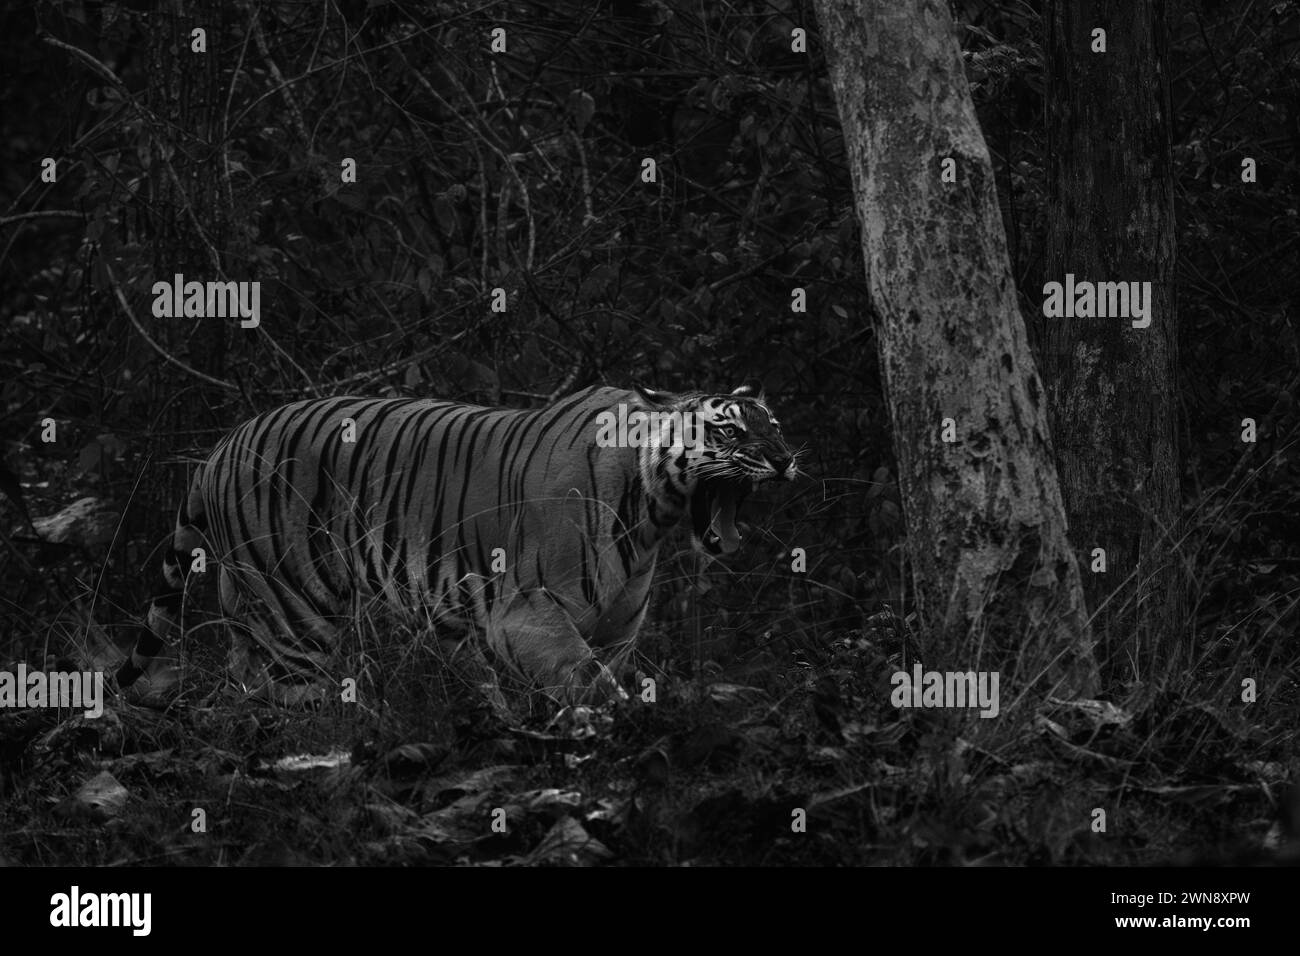 Tigre del Bengala - tigri del Panthera, grande gatto colorato dalle foreste e dai boschi dell'Asia meridionale, riserva delle tigri di Nagarahole, India. Foto Stock